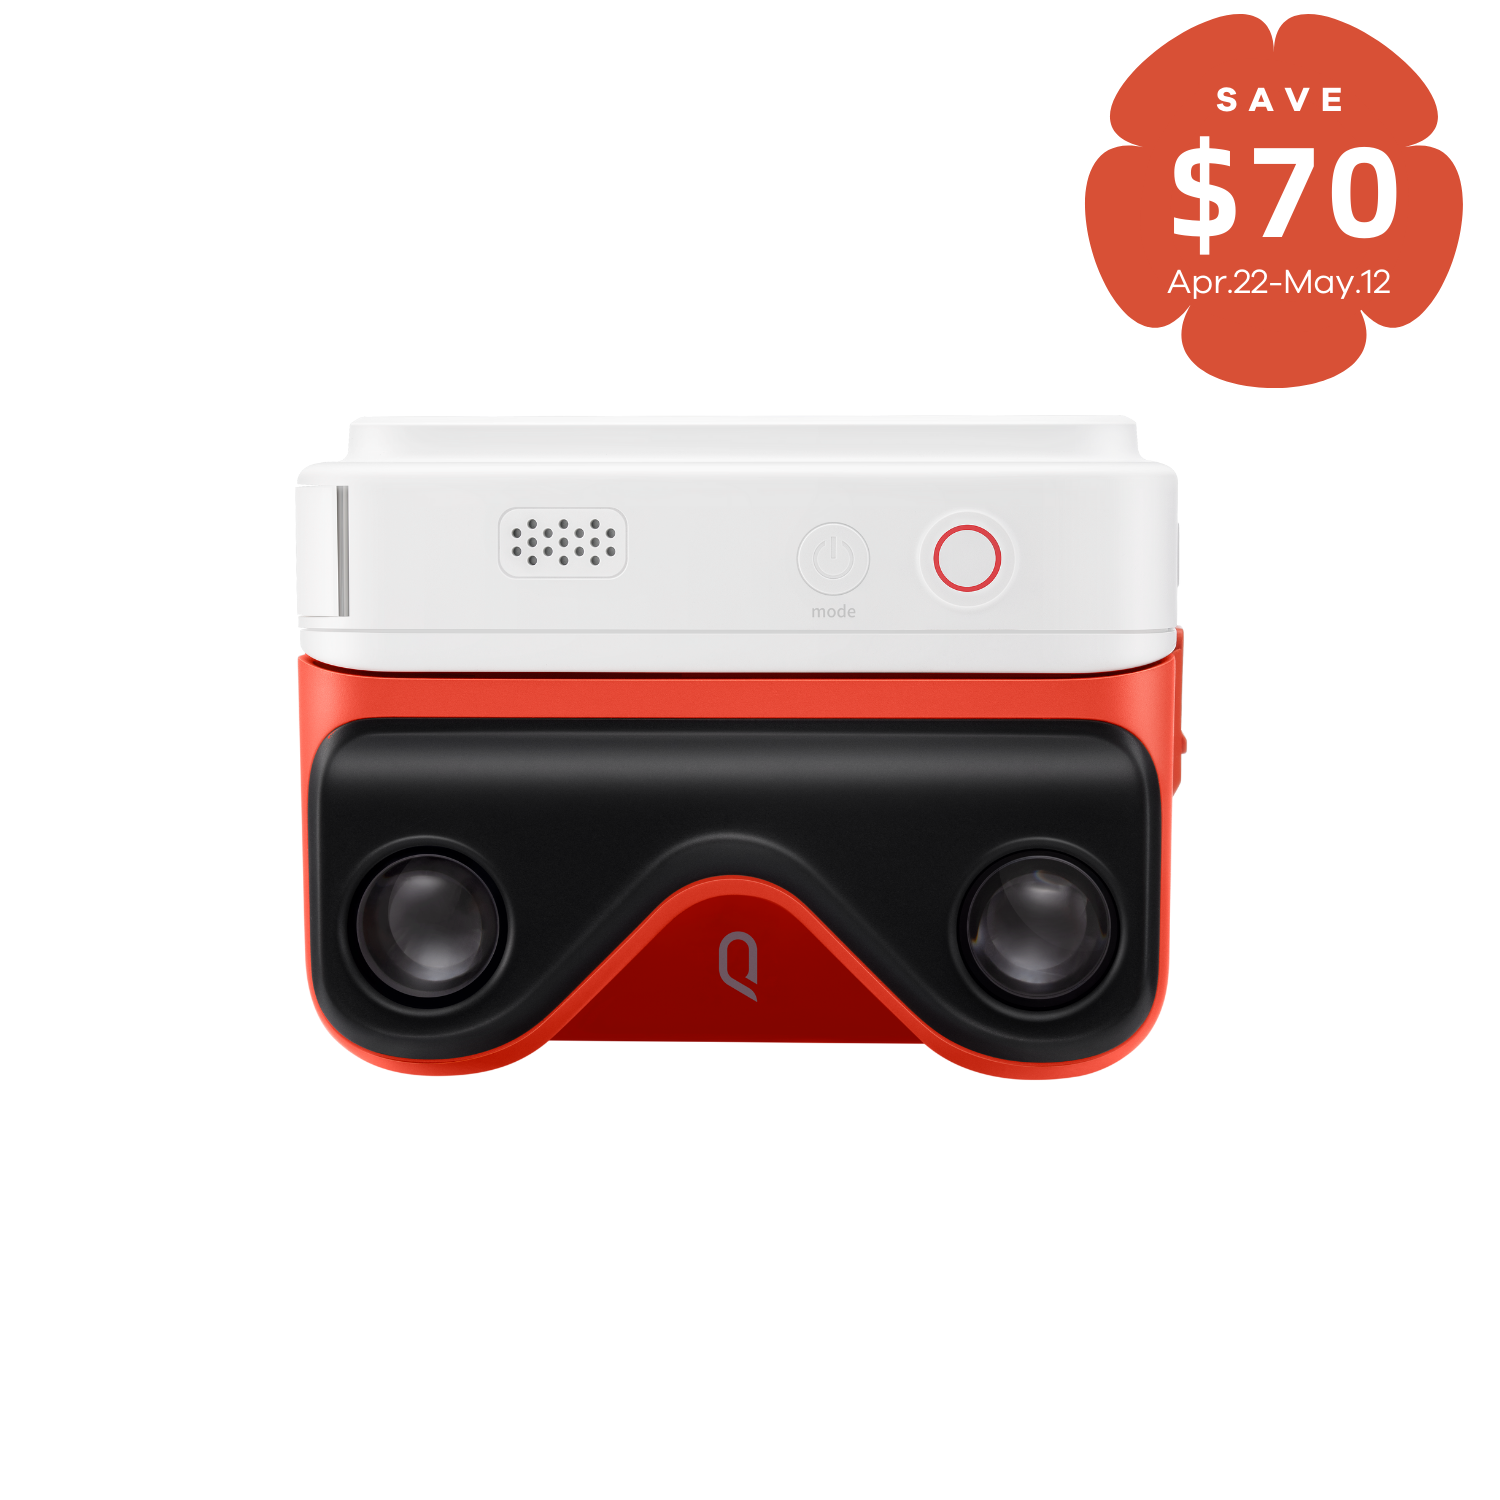 Buy kandao qoocam ego 3d camera